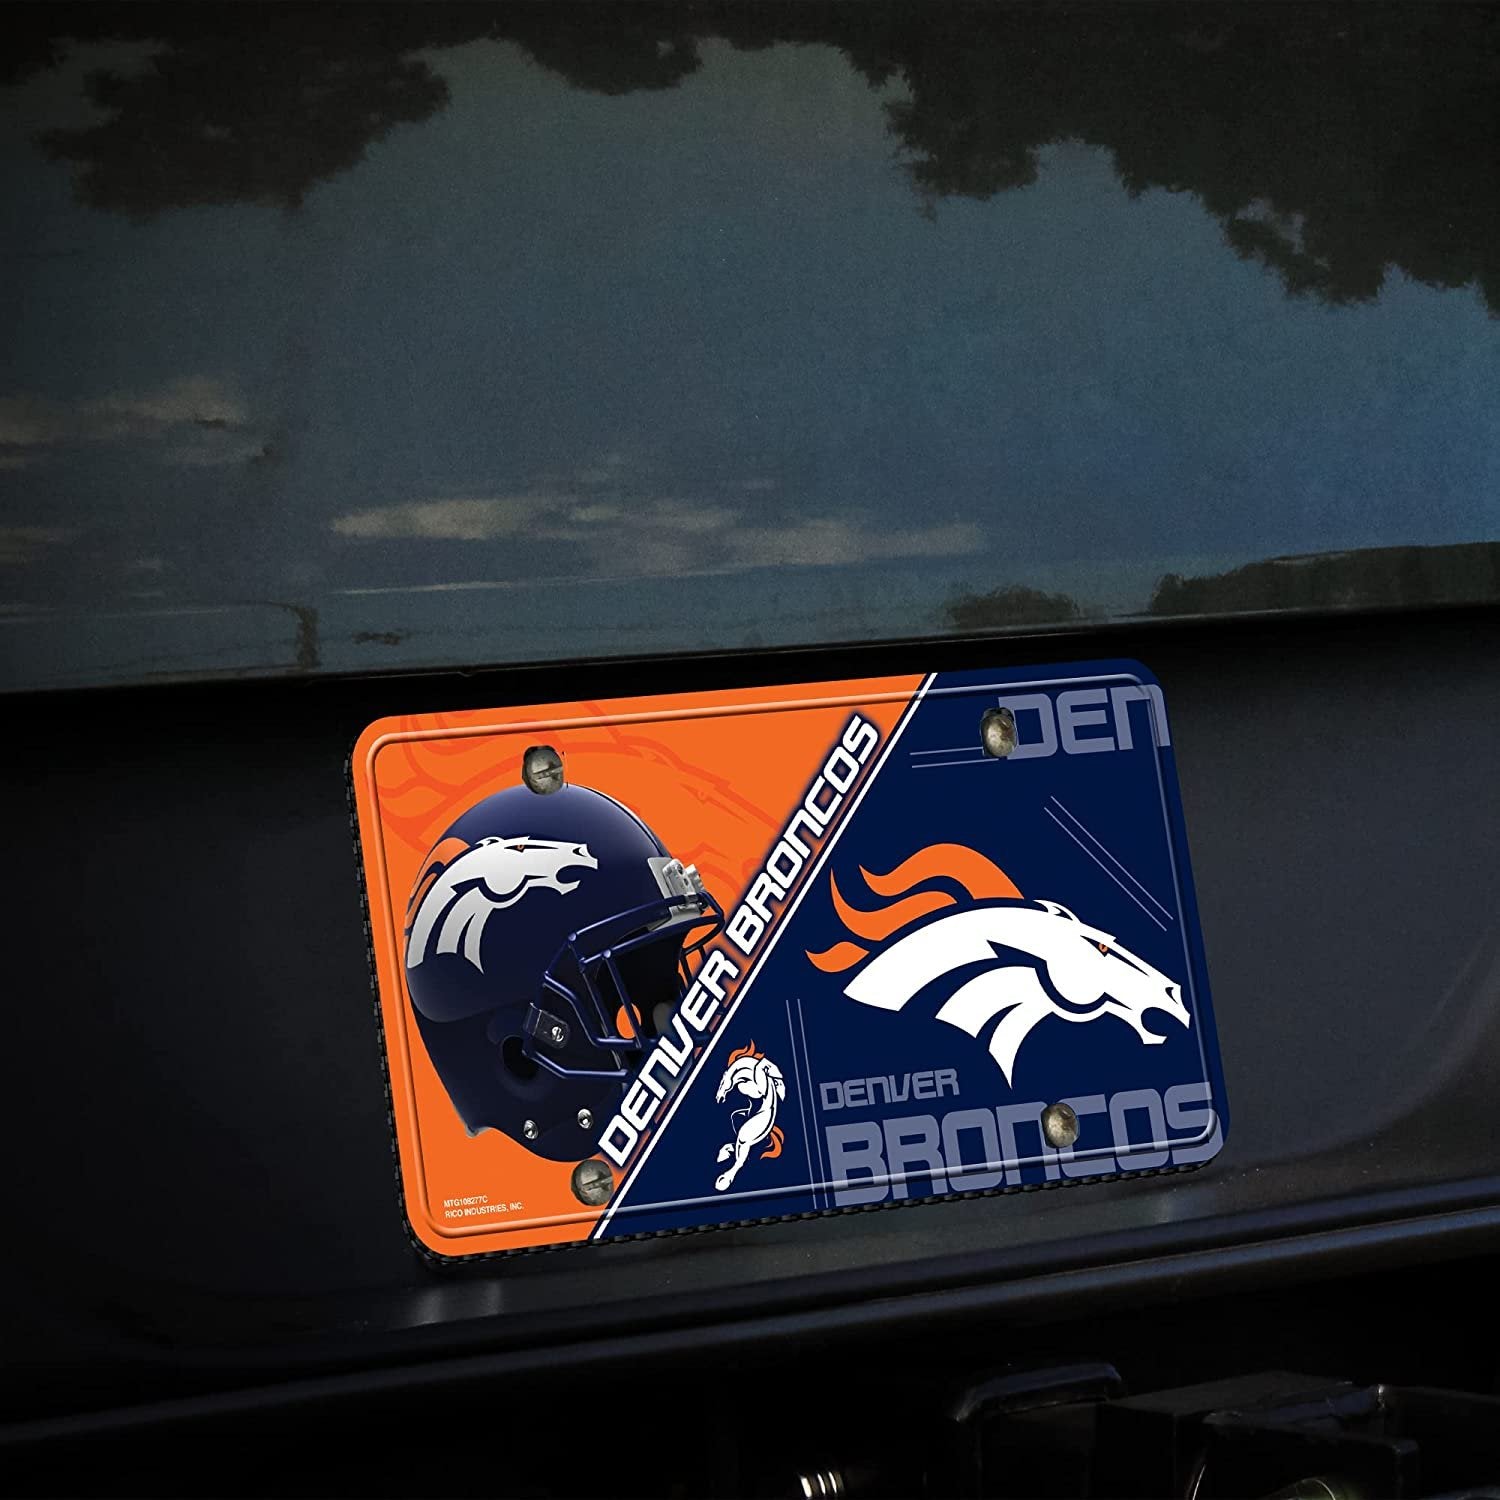 Denver Broncos Metal Tag License Plate Split Design 12x6 Inch